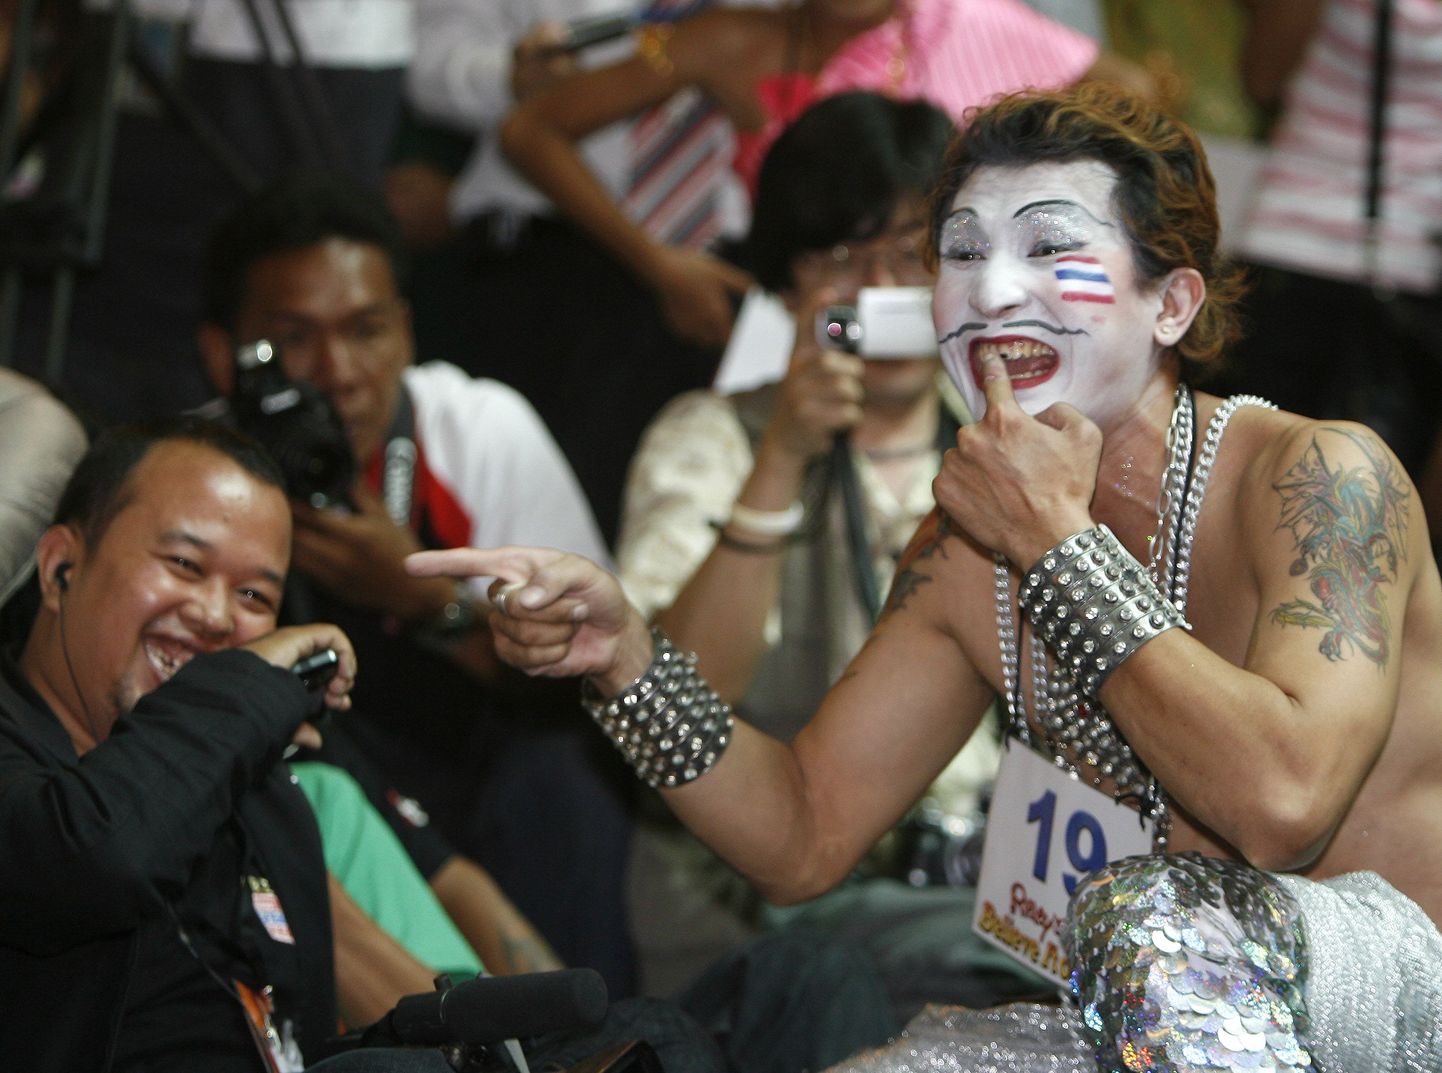 Rahvusvahelisel naermisvõistlusel osalenud Kowit Sripongi etteaste